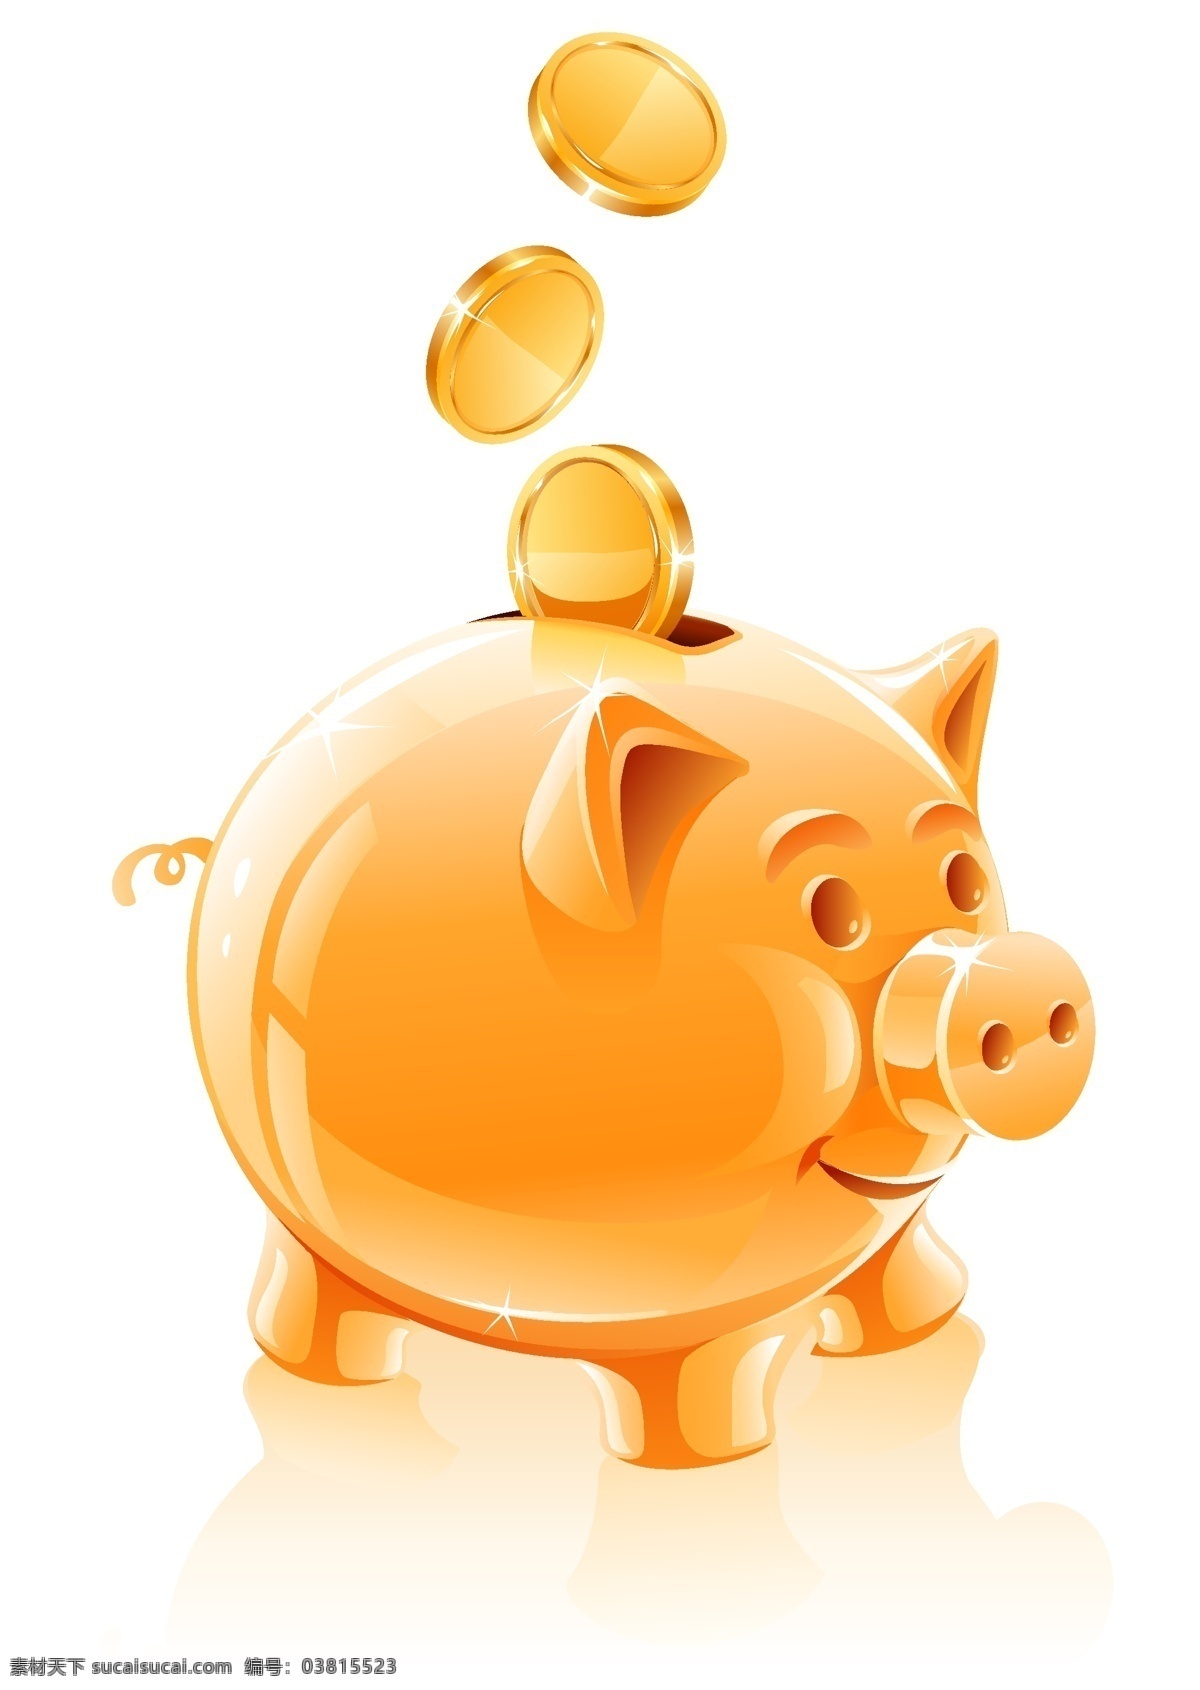 可爱 小金 猪 储蓄罐 金猪 扑满 钱币 金币 卡通 商务金融 金融货币